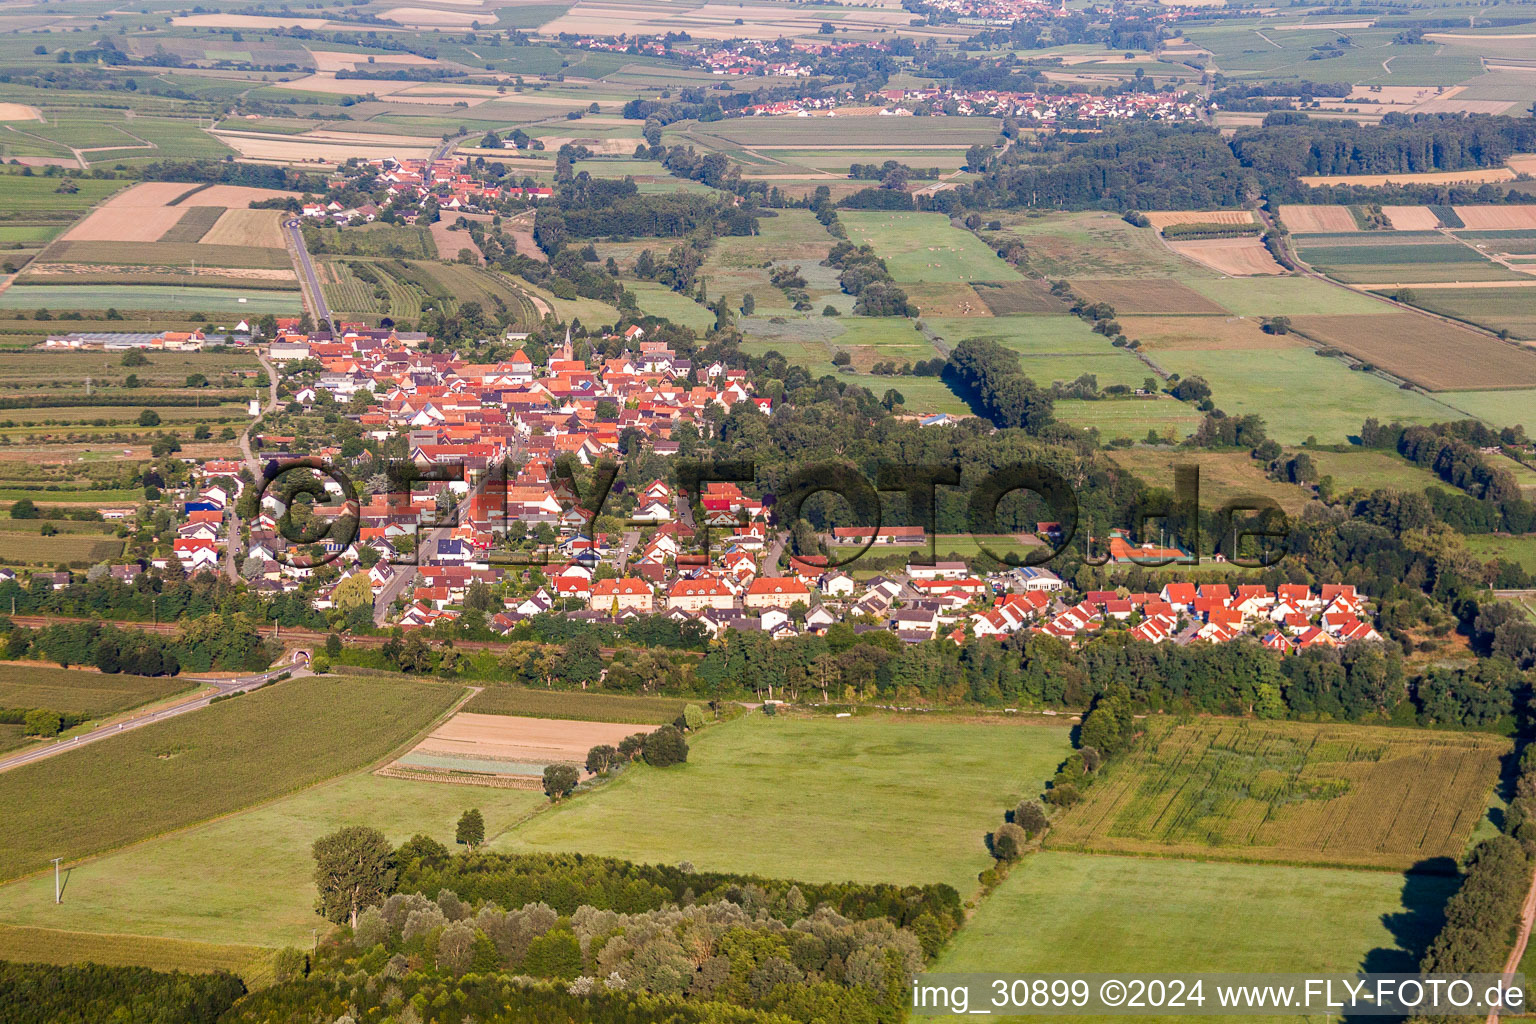 Vue aérienne de Champs agricoles et surfaces utilisables à Winden dans le département Rhénanie-Palatinat, Allemagne